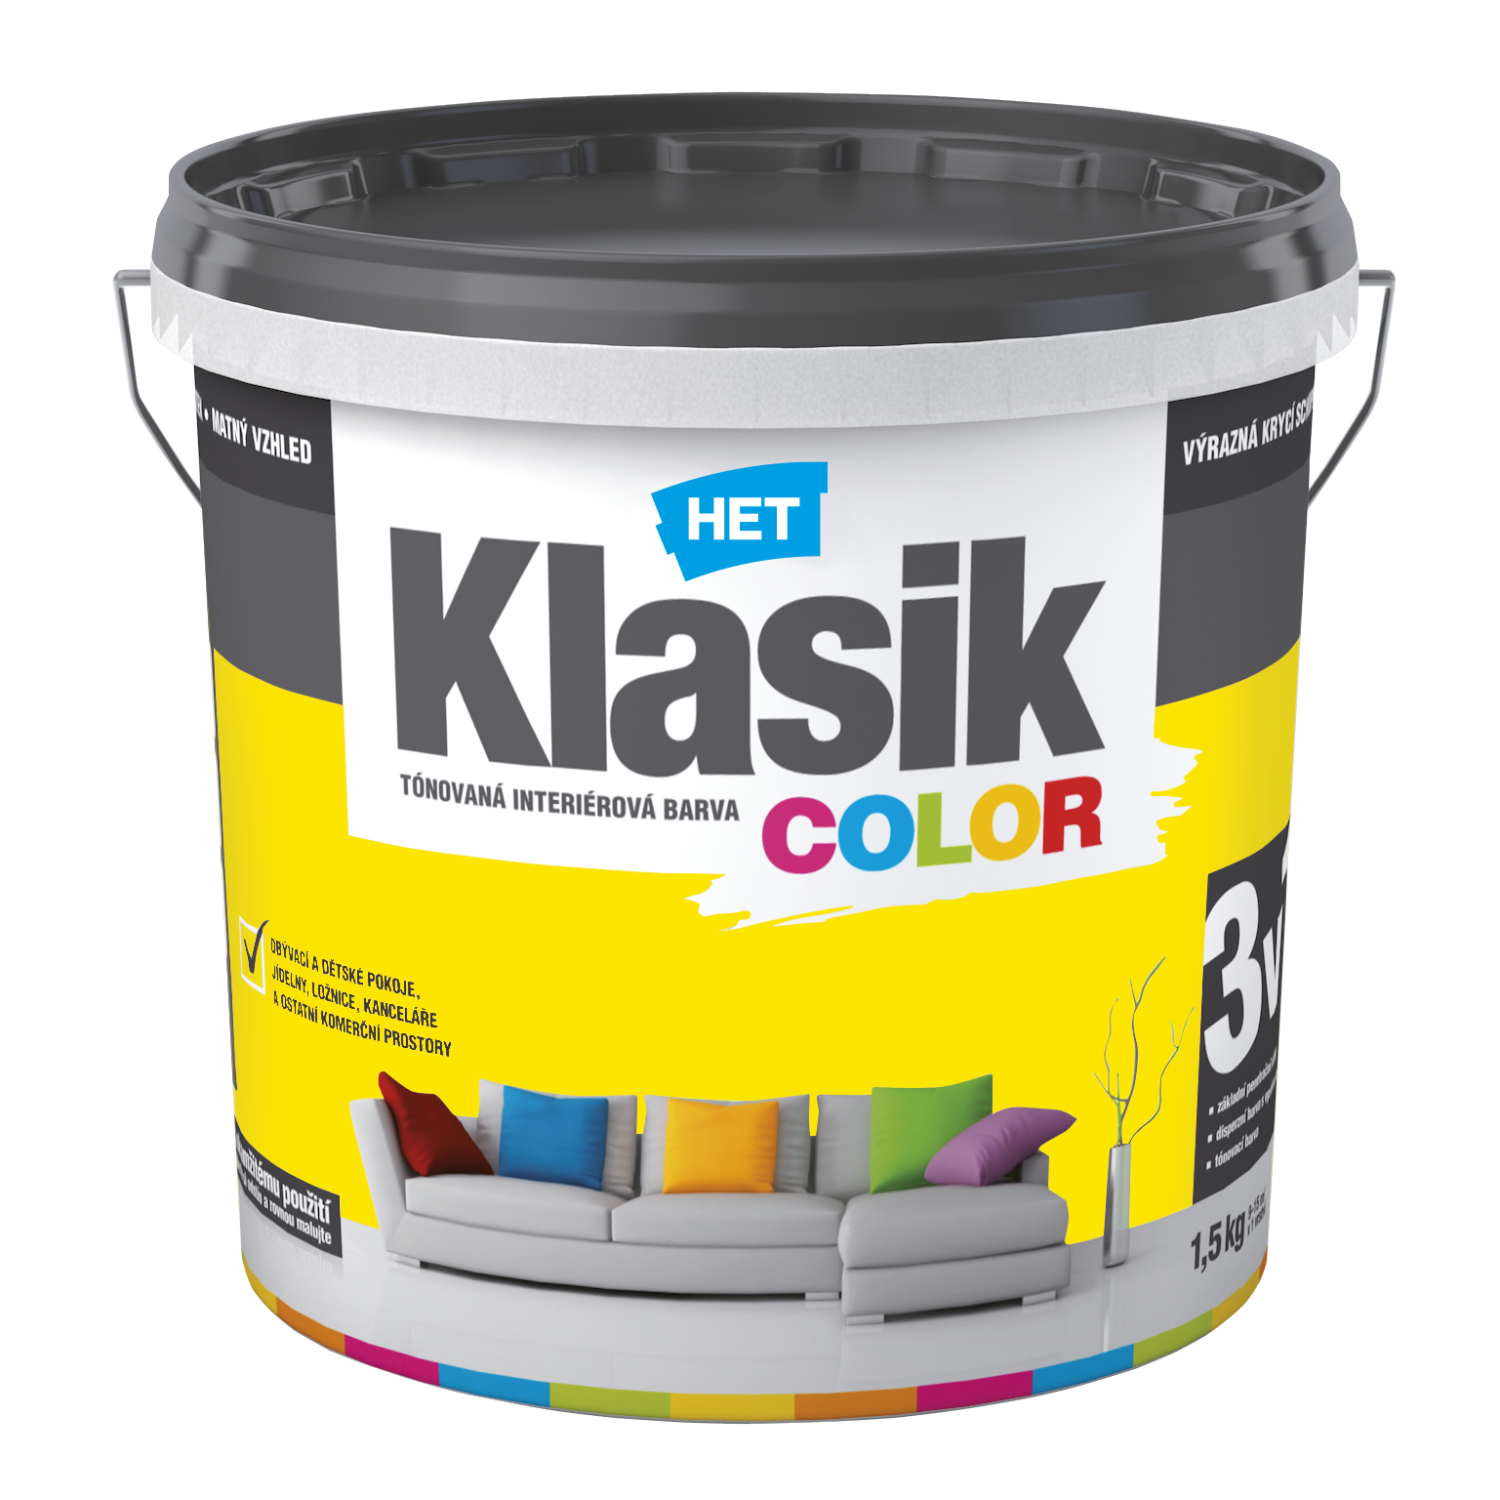 HET Klasik COLOR tónovaná interiérová akrylátová disperzná oteruvzdorná farba 1,5 kg, KC0608 - žltý zázvorový